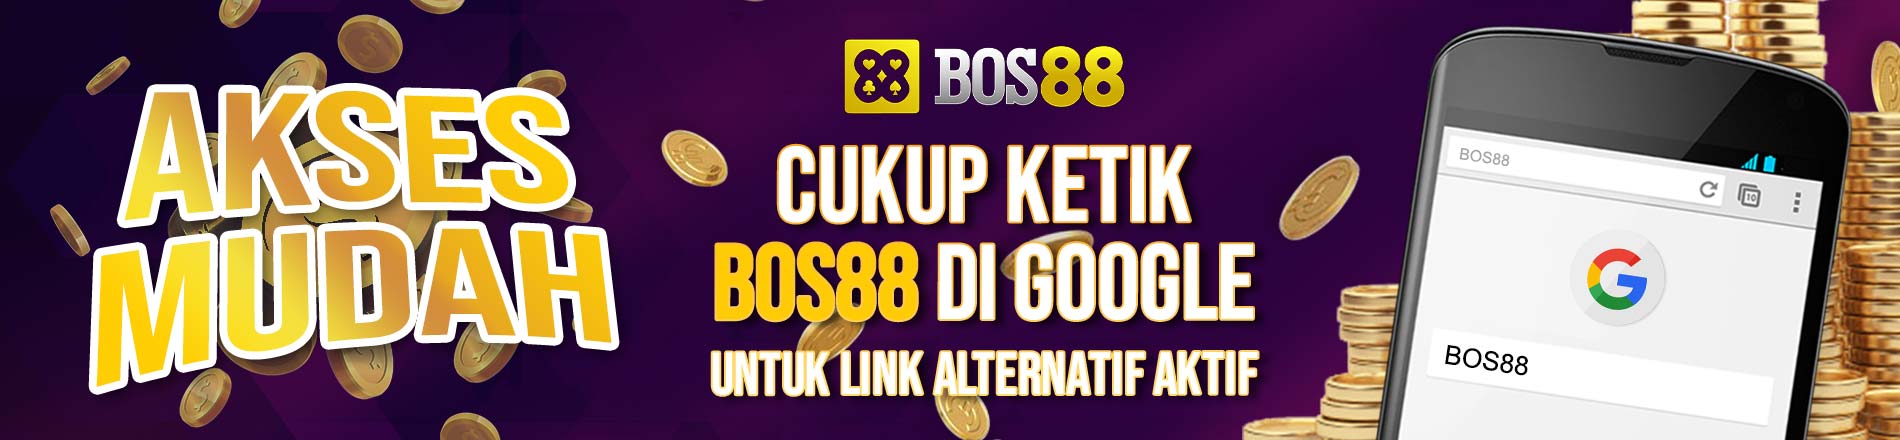 Bos88 Google